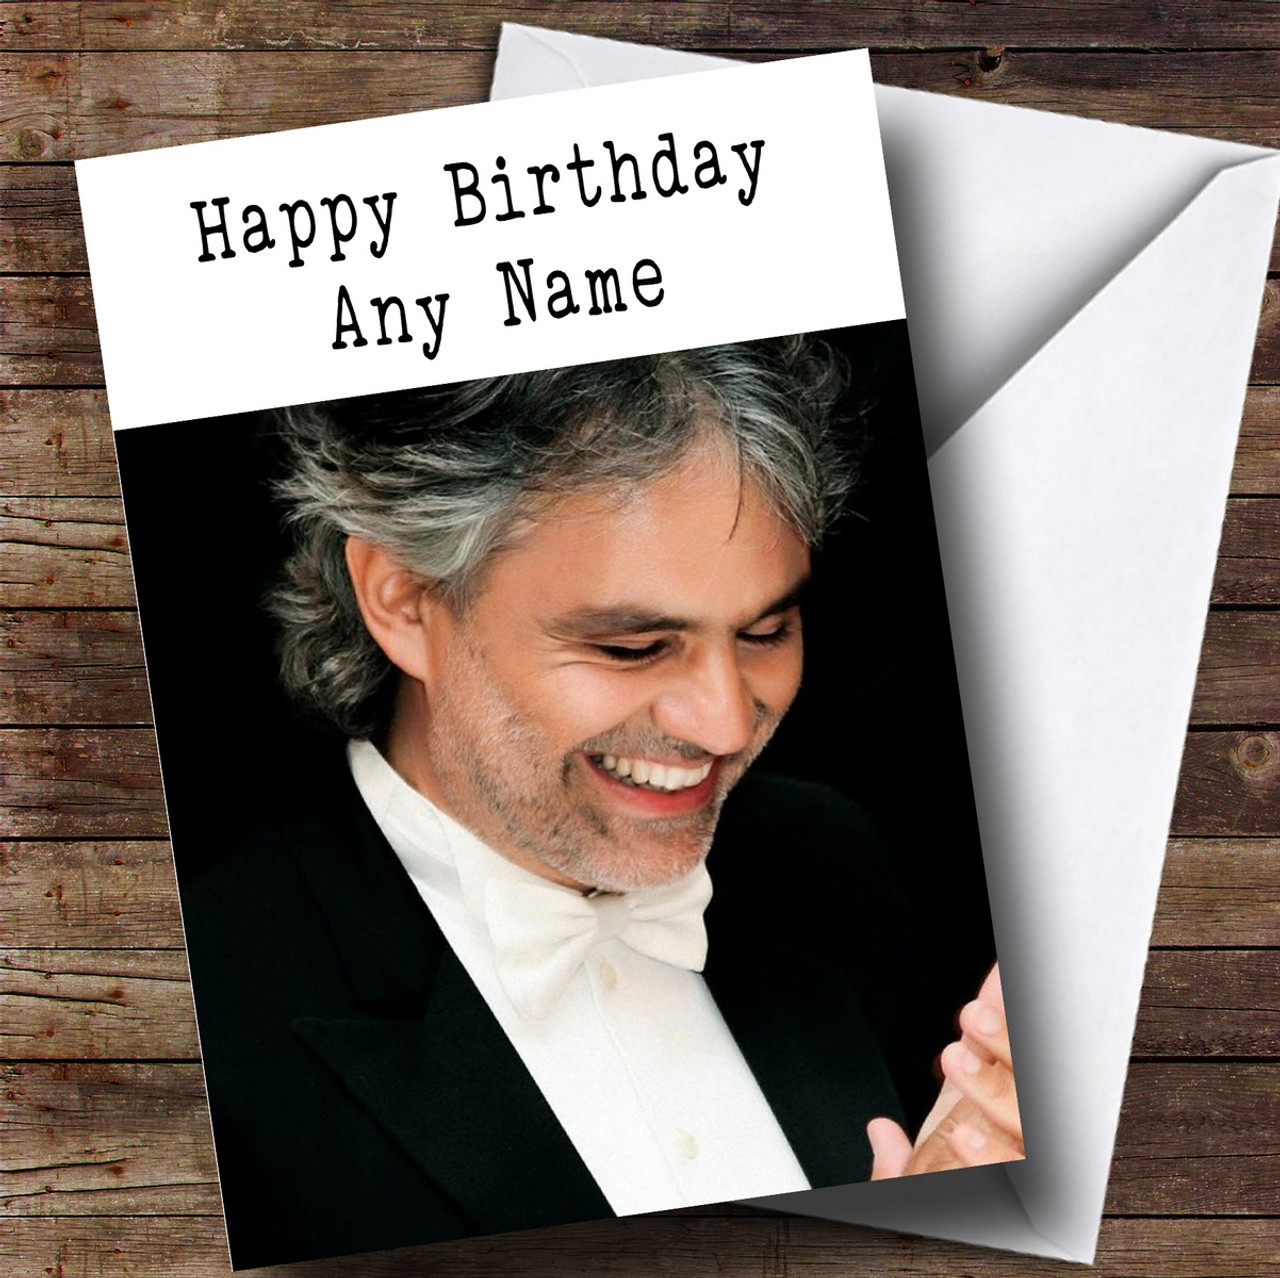 Andrea Bocelli - Happy birthday Amos!